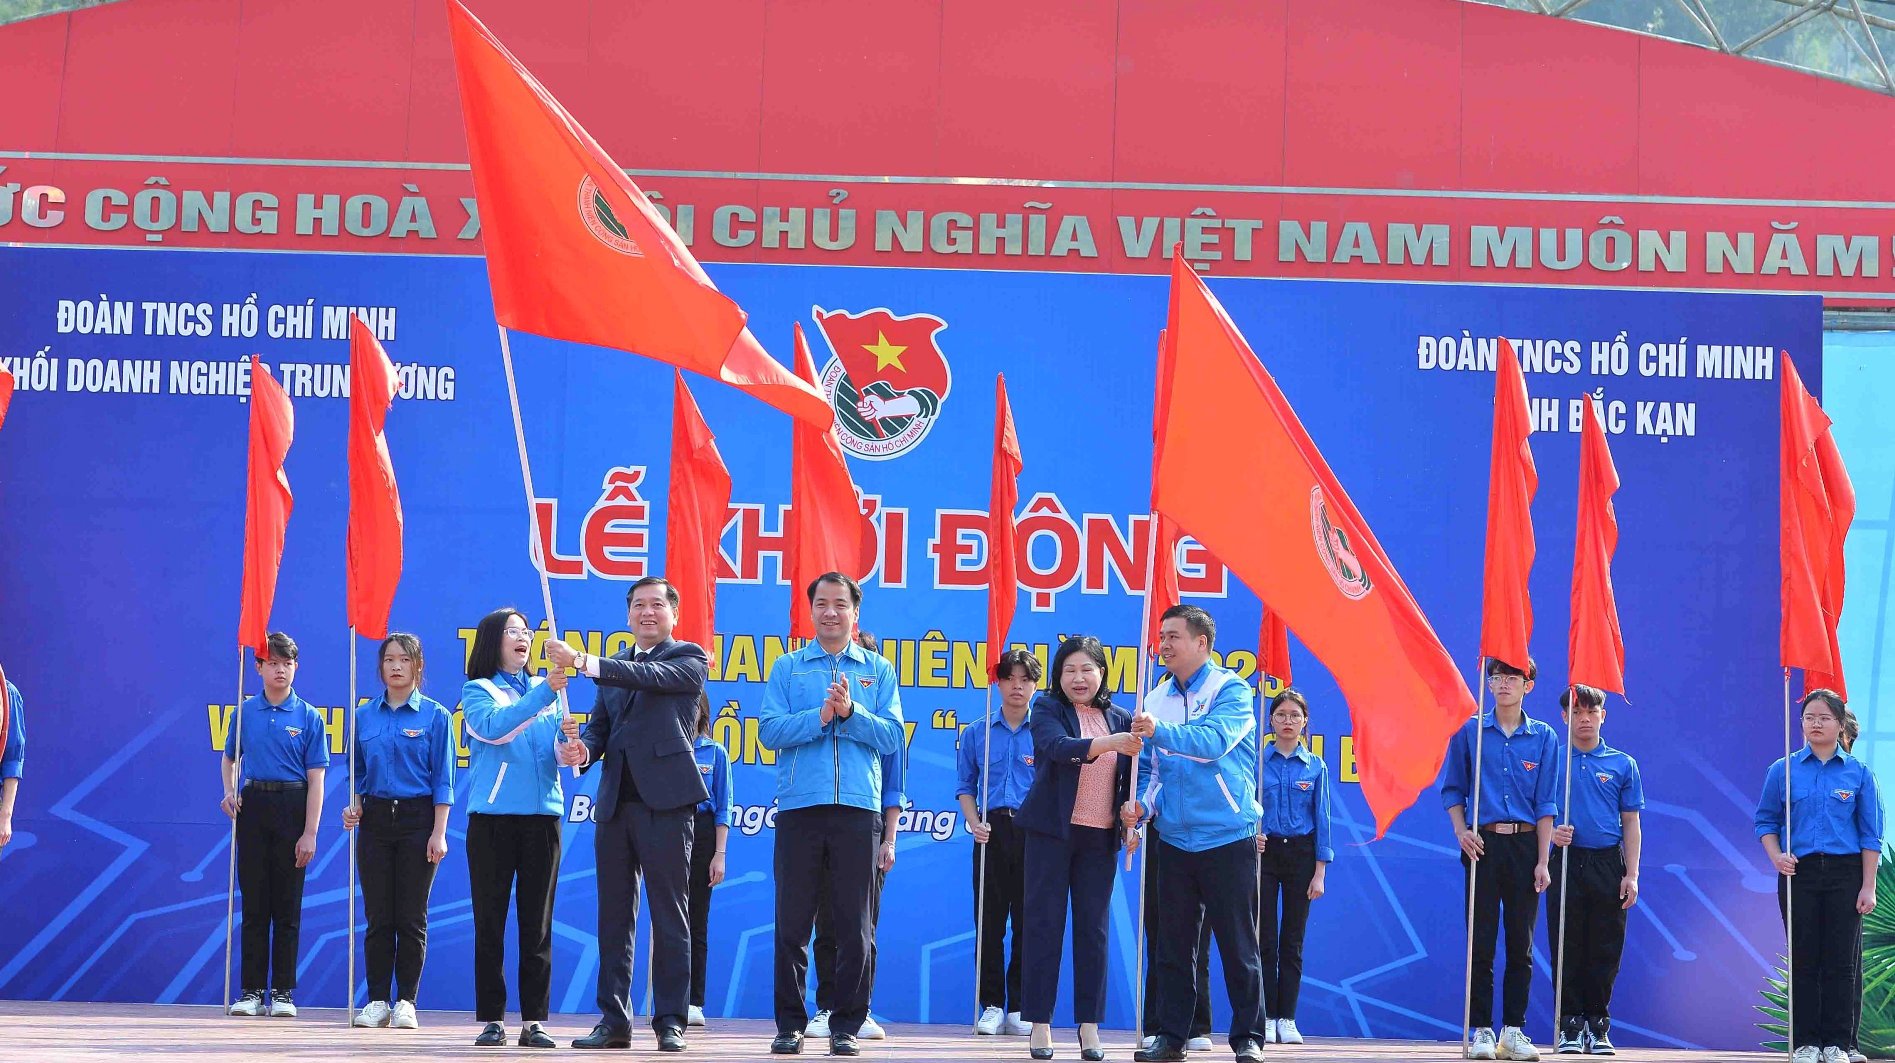 Thanh Niên: Thanh niên - những người trẻ đầy năng lượng, sáng tạo, nhiệt huyết và tình nguyện. Tương lai Việt Nam sẽ sáng lạn và phát triển vượt bậc nhờ nỗ lực của những người trẻ này. Cùng nhau xây dựng một Việt Nam giàu mạnh, hạnh phúc và phát triển.